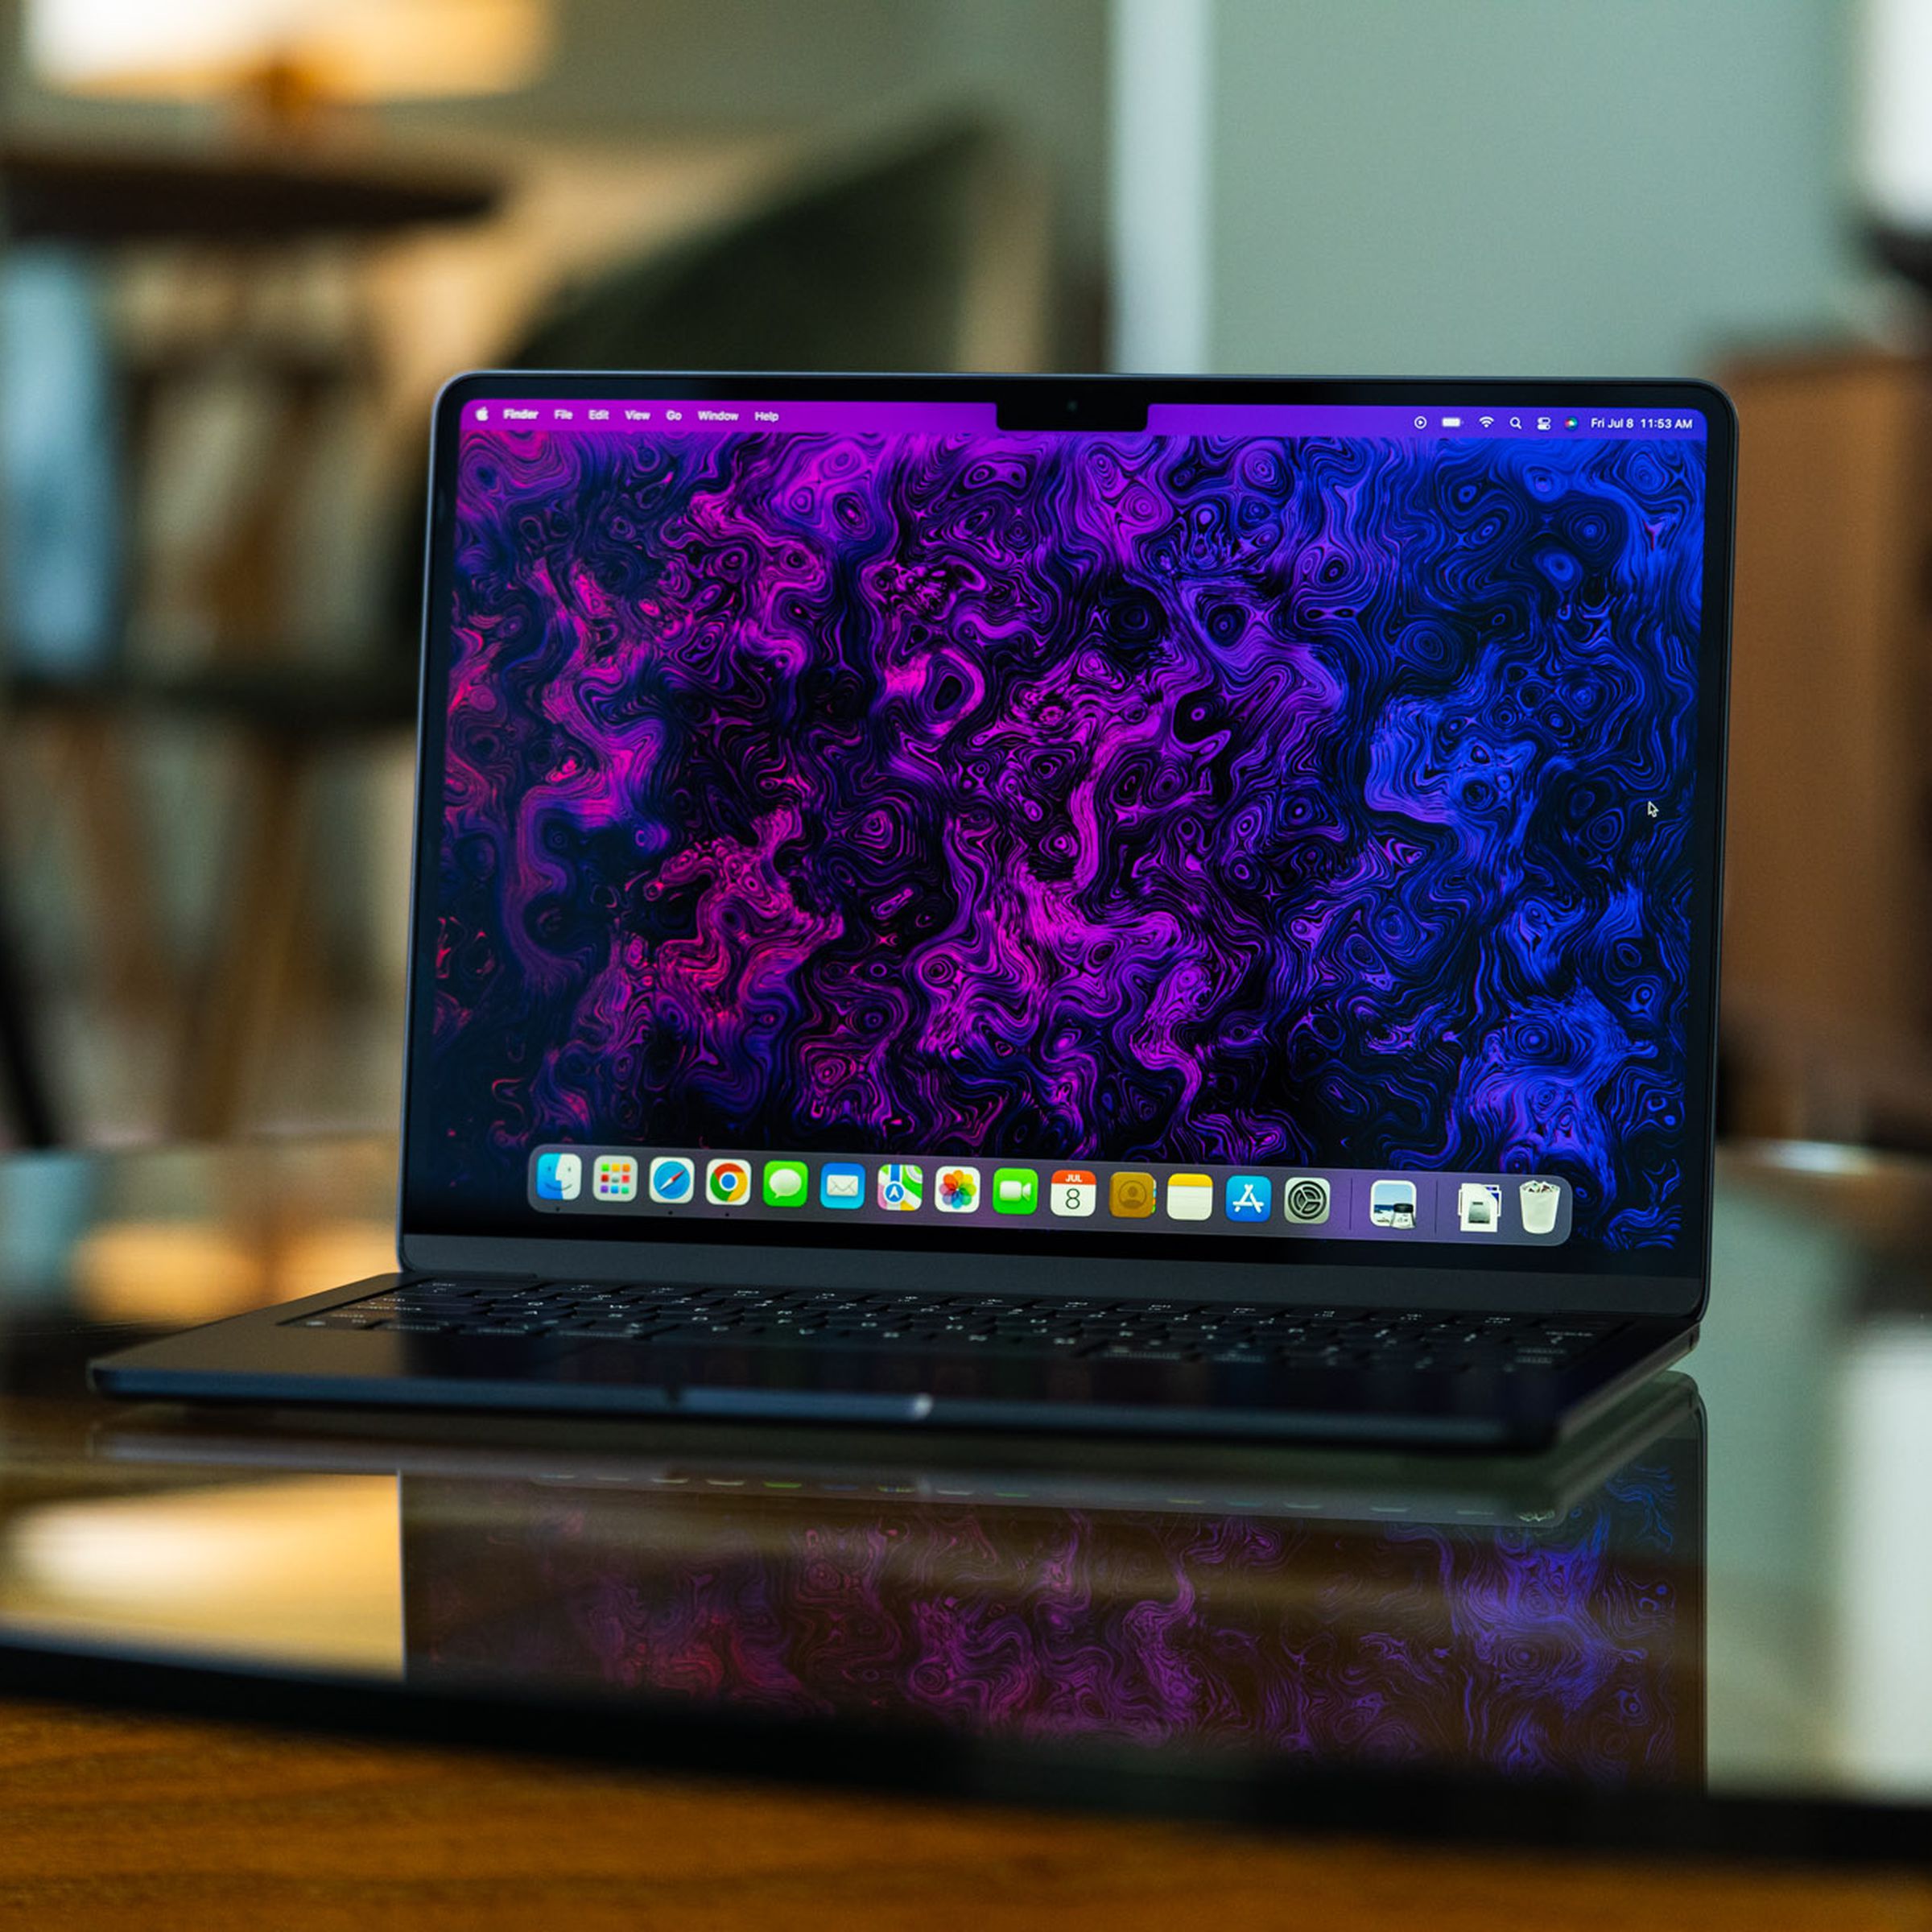 M2 MacBook Air được mở ra, đối diện với camera.  Màn hình của nó đang bật, hiển thị hình nền màu tím và đen đầy ảo giác do nhóm minh họa và nghệ thuật của The Verge tạo ra.